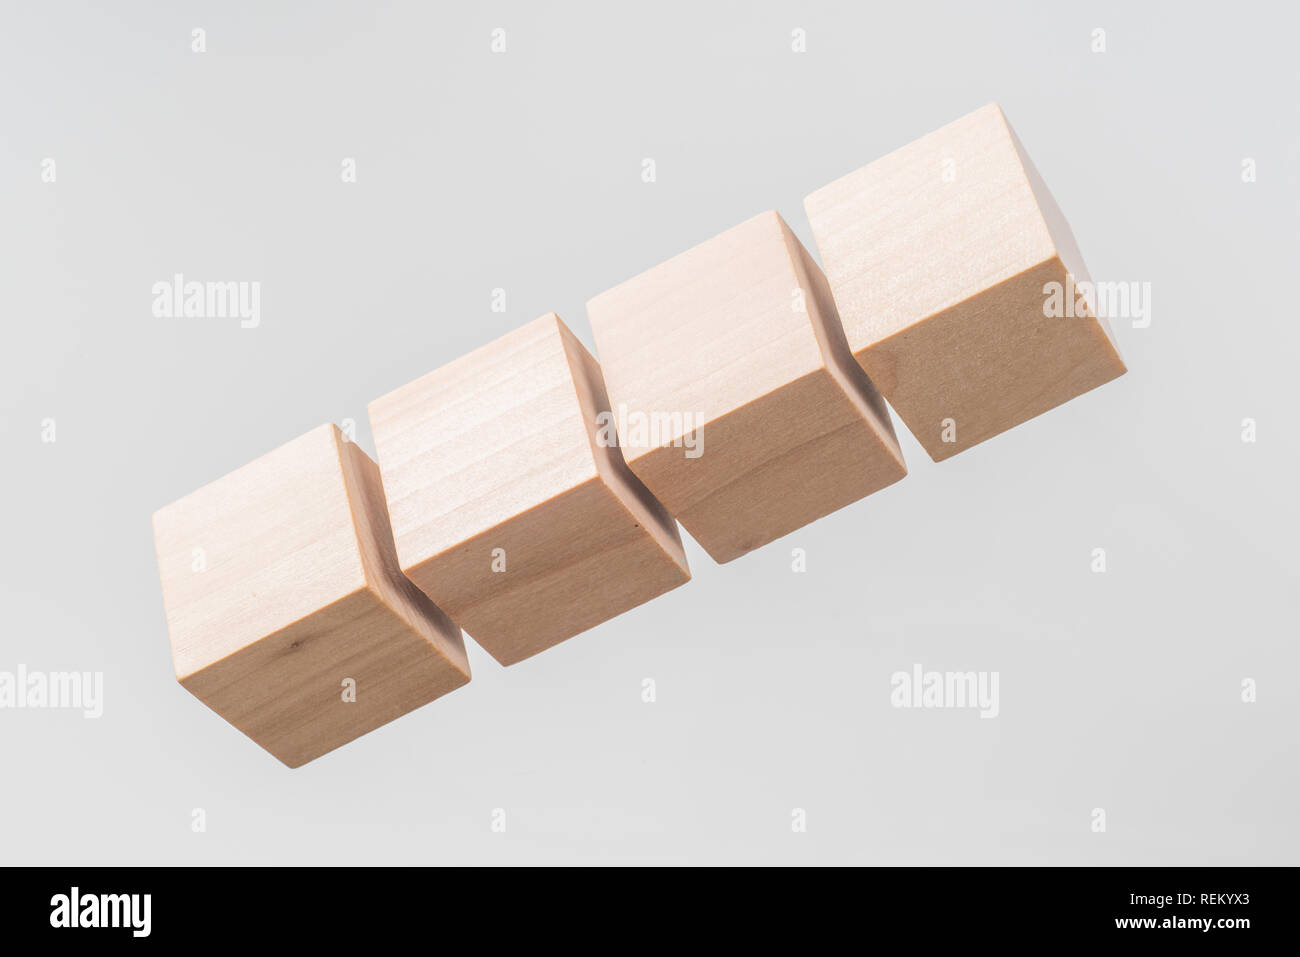 Business & design concept - Résumé du vrai géométrique cube de bois flottant isolé sur fond, c'est pas le 3D render. Banque D'Images